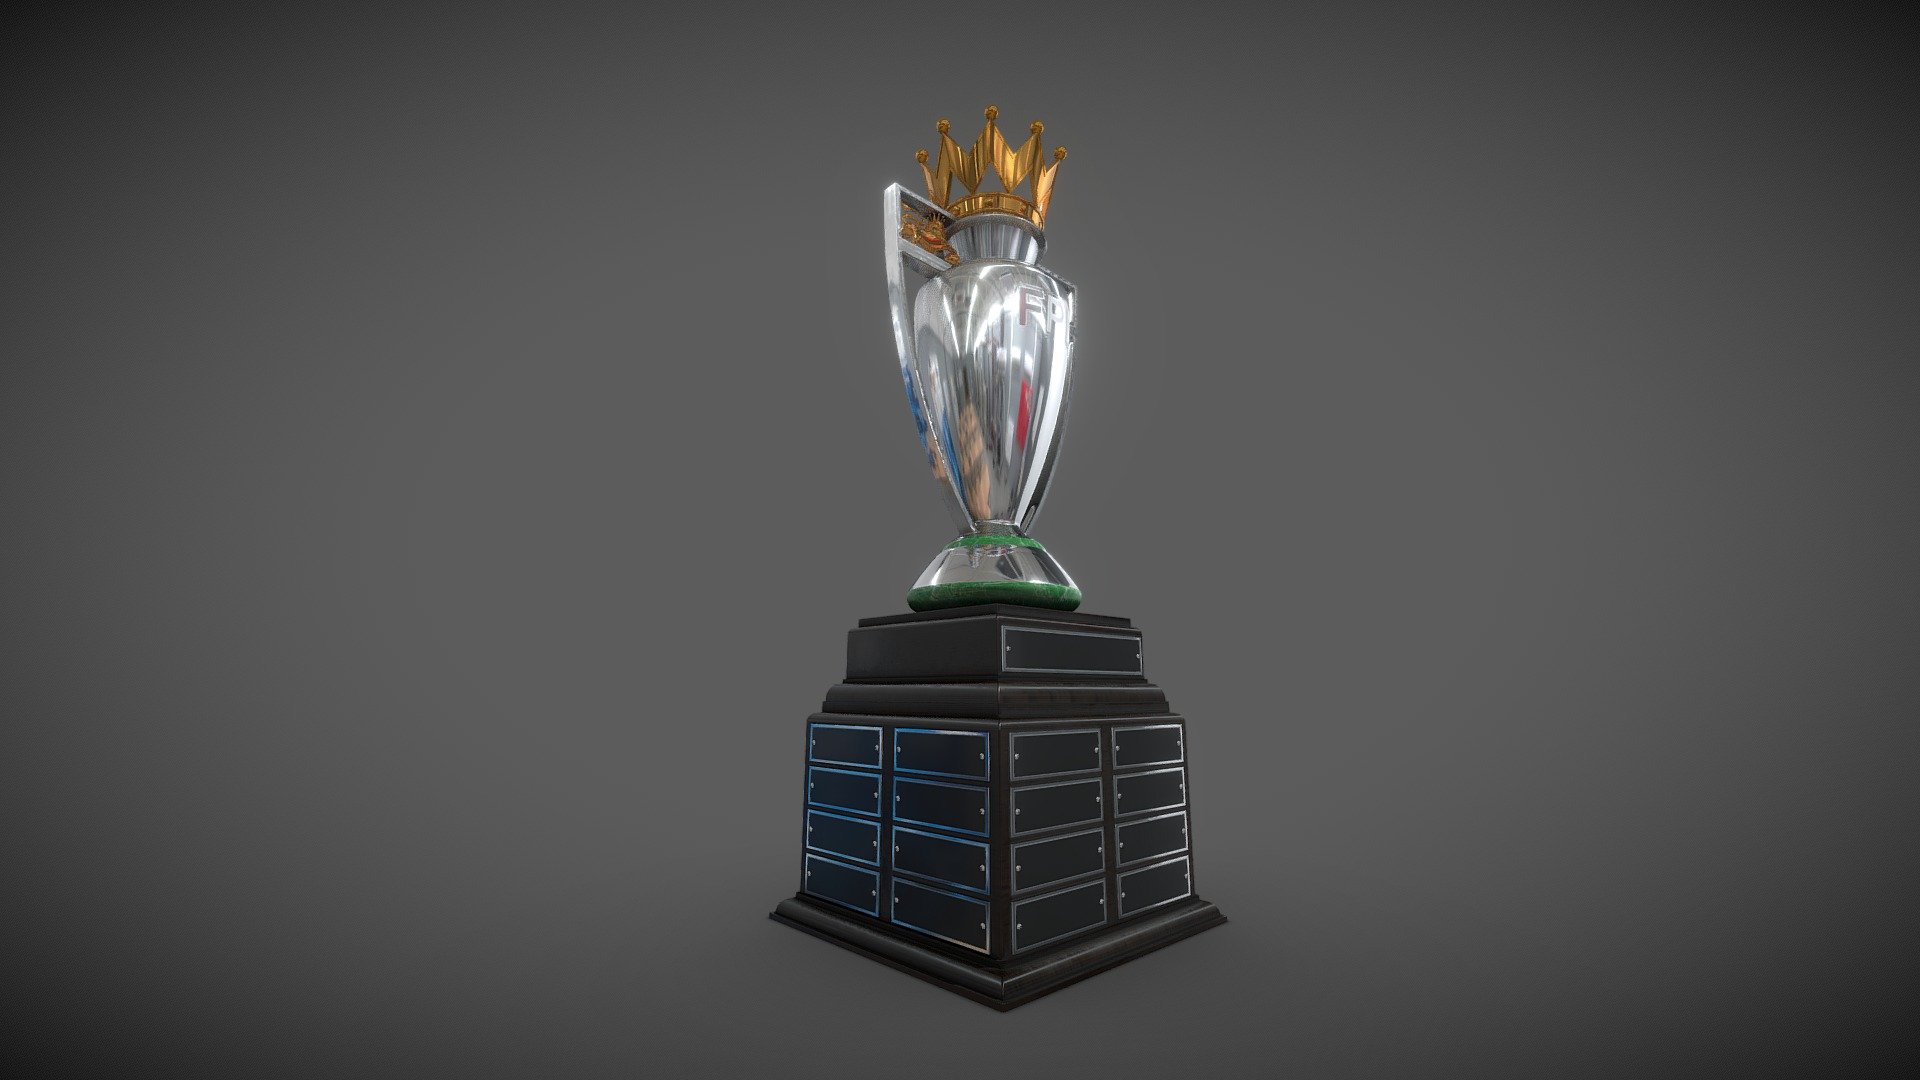 Premier league trophy - Premier league trophy - 3D model by Pixel Swan (@Pixel-swan) 3d model